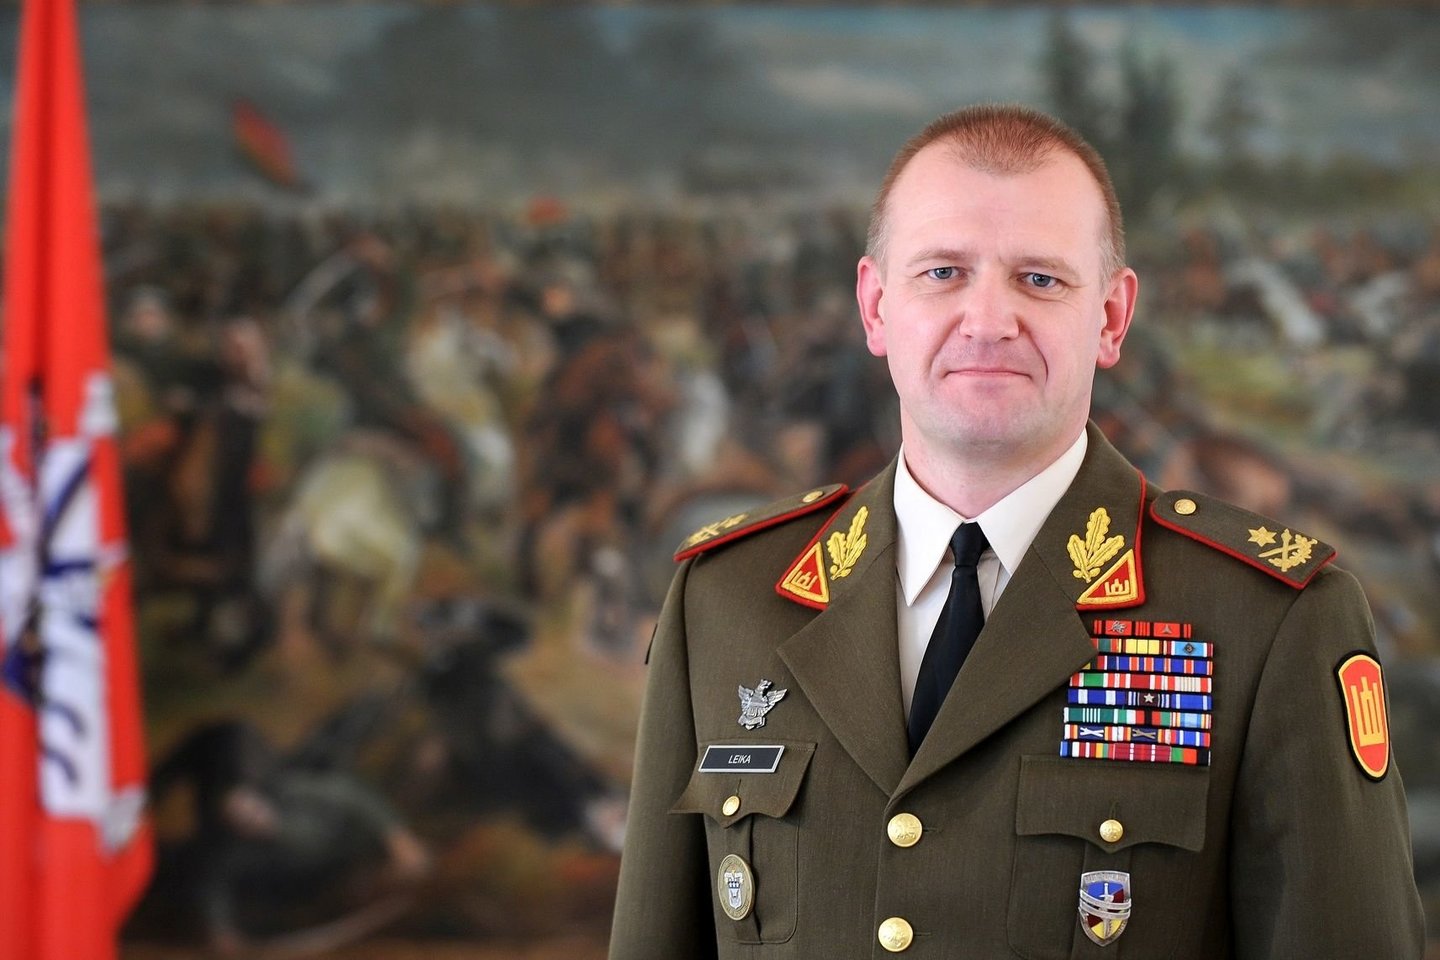  Karo akademijai minint Mokslo ir žinių dieną, vadovavimą jai perims brigados generolas Almantas Leika.<br> A. Pliadžio nuotr.